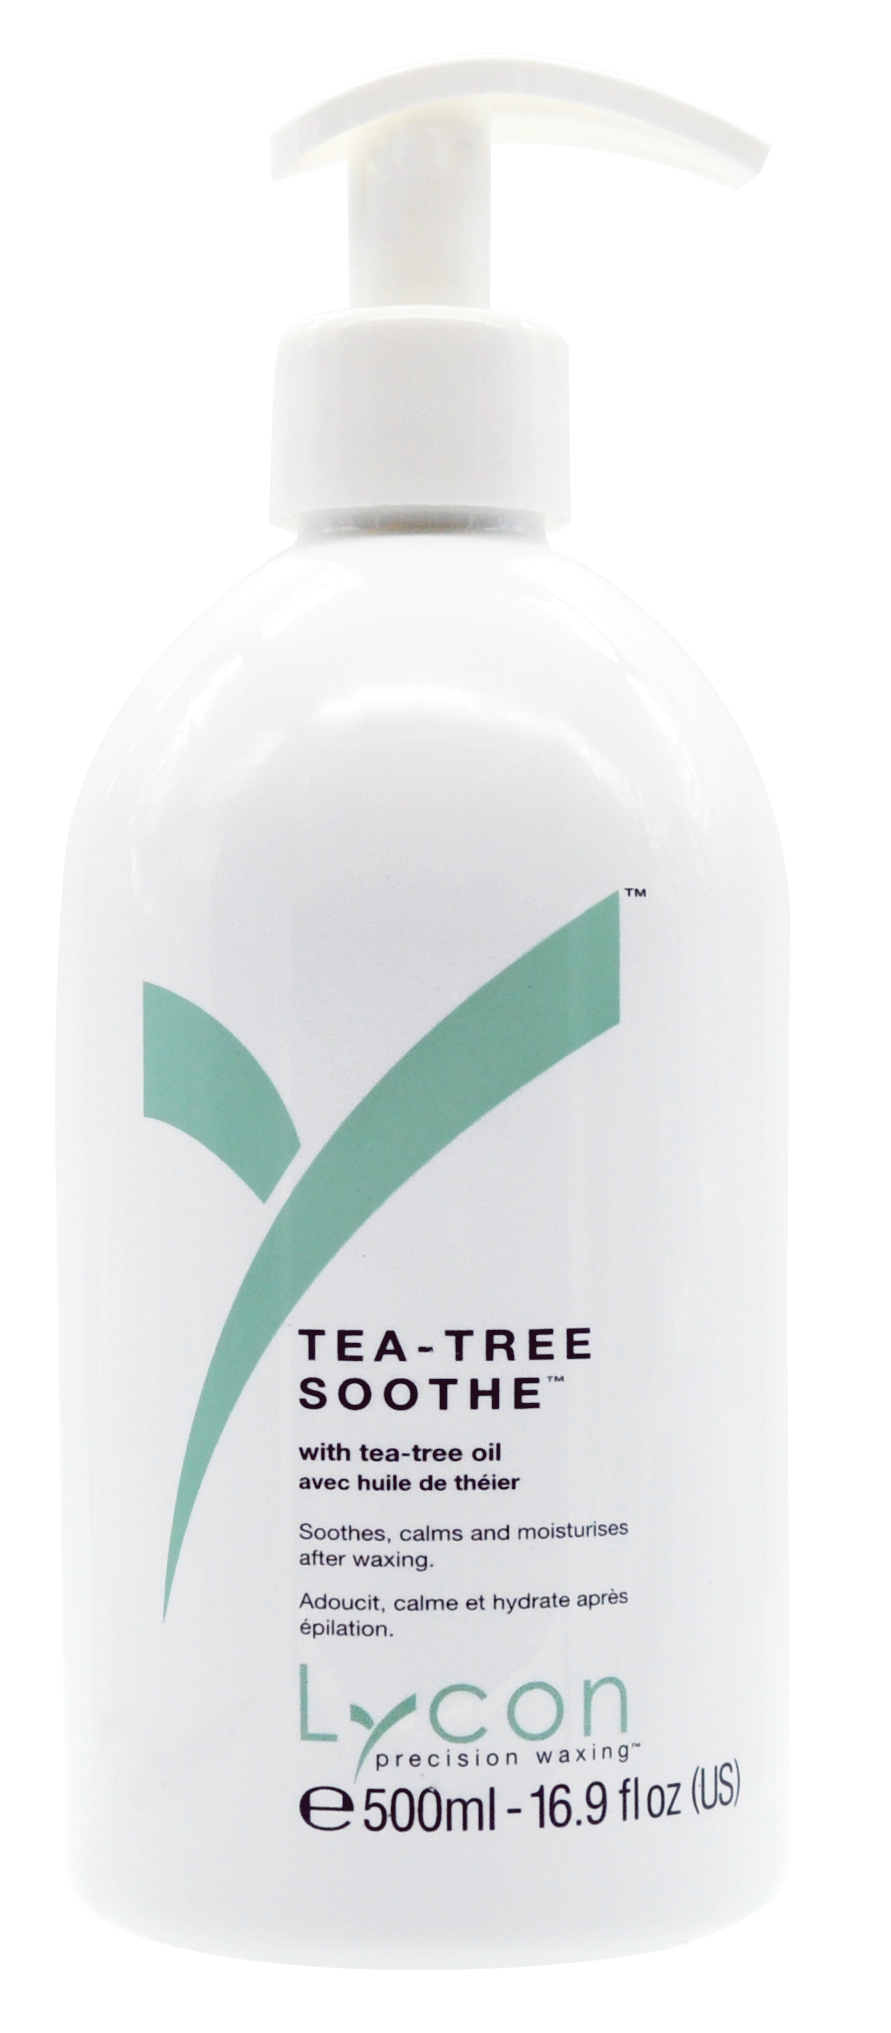 Tea-Tree Soothe